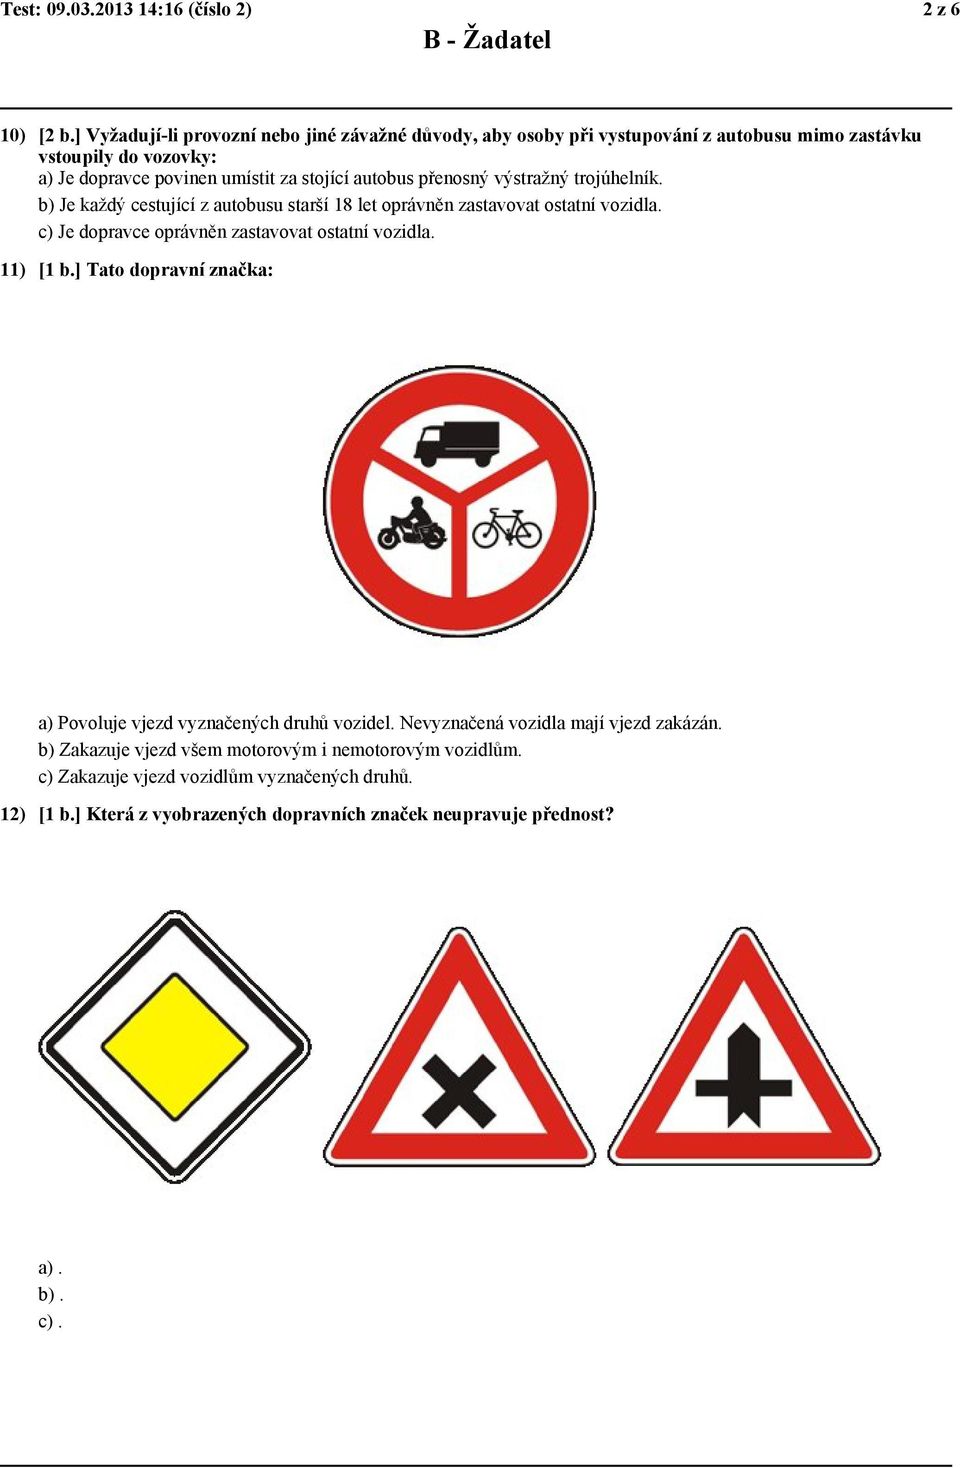 přenosný výstražný trojúhelník. b) Je každý cestující z autobusu starší 18 let oprávněn zastavovat ostatní vozidla. c) Je dopravce oprávněn zastavovat ostatní vozidla.